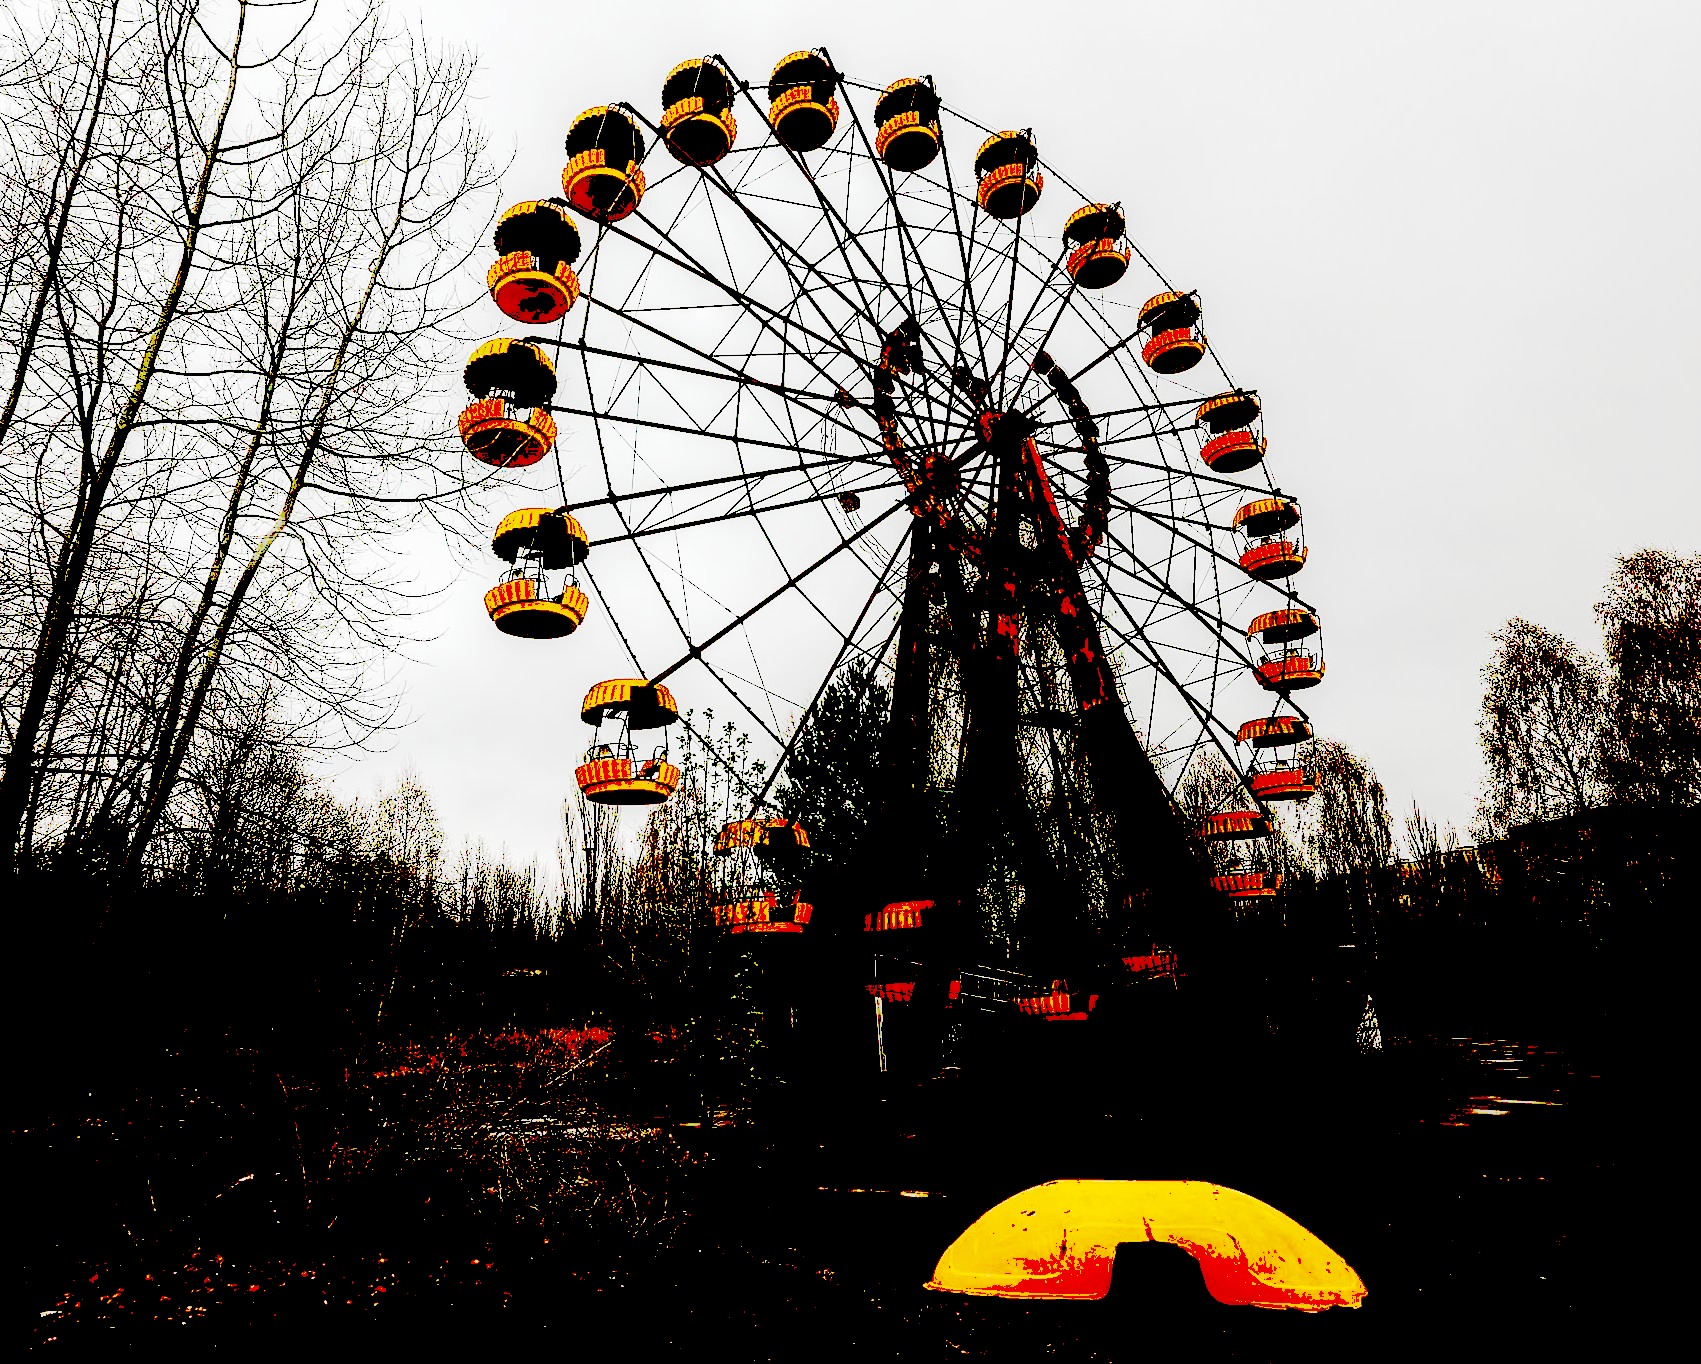 Http chernobyl. Чернобыльская АЭС колесо обозрения. Чернобыль фожиаси. Чернобыль 1887. Колесо обозрения Припять.